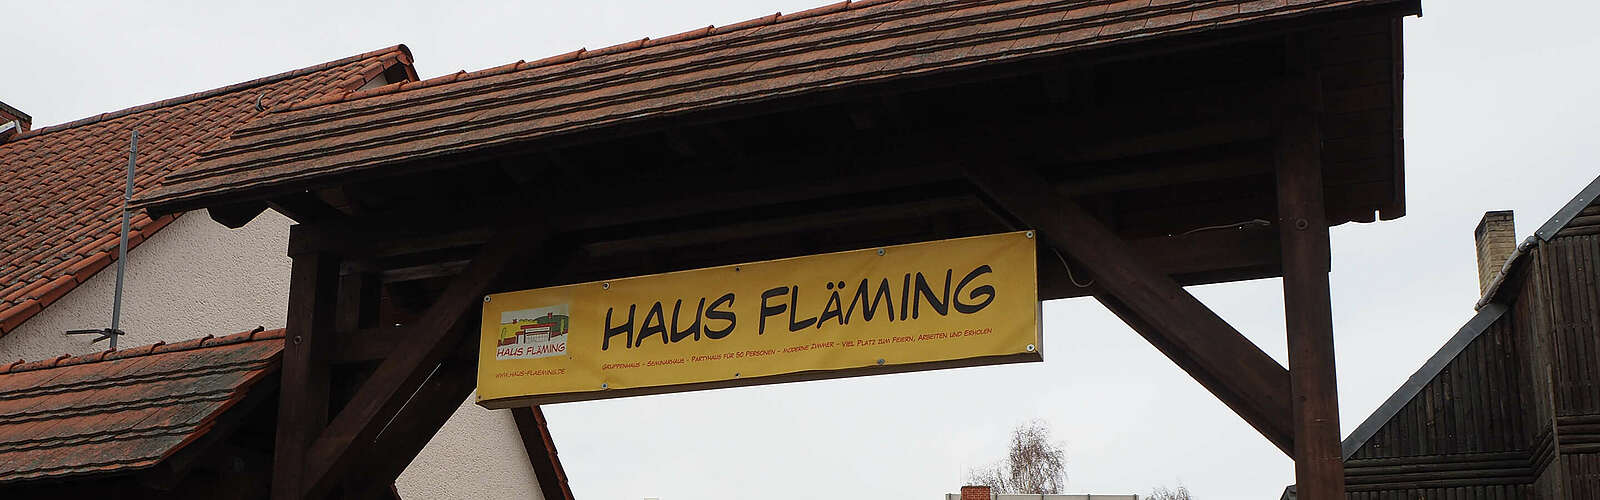 Haus Fläming Dahnsdorf,
        
    

        Foto: Kreativnetzwerk FlämingSchmiede/Katja Benke